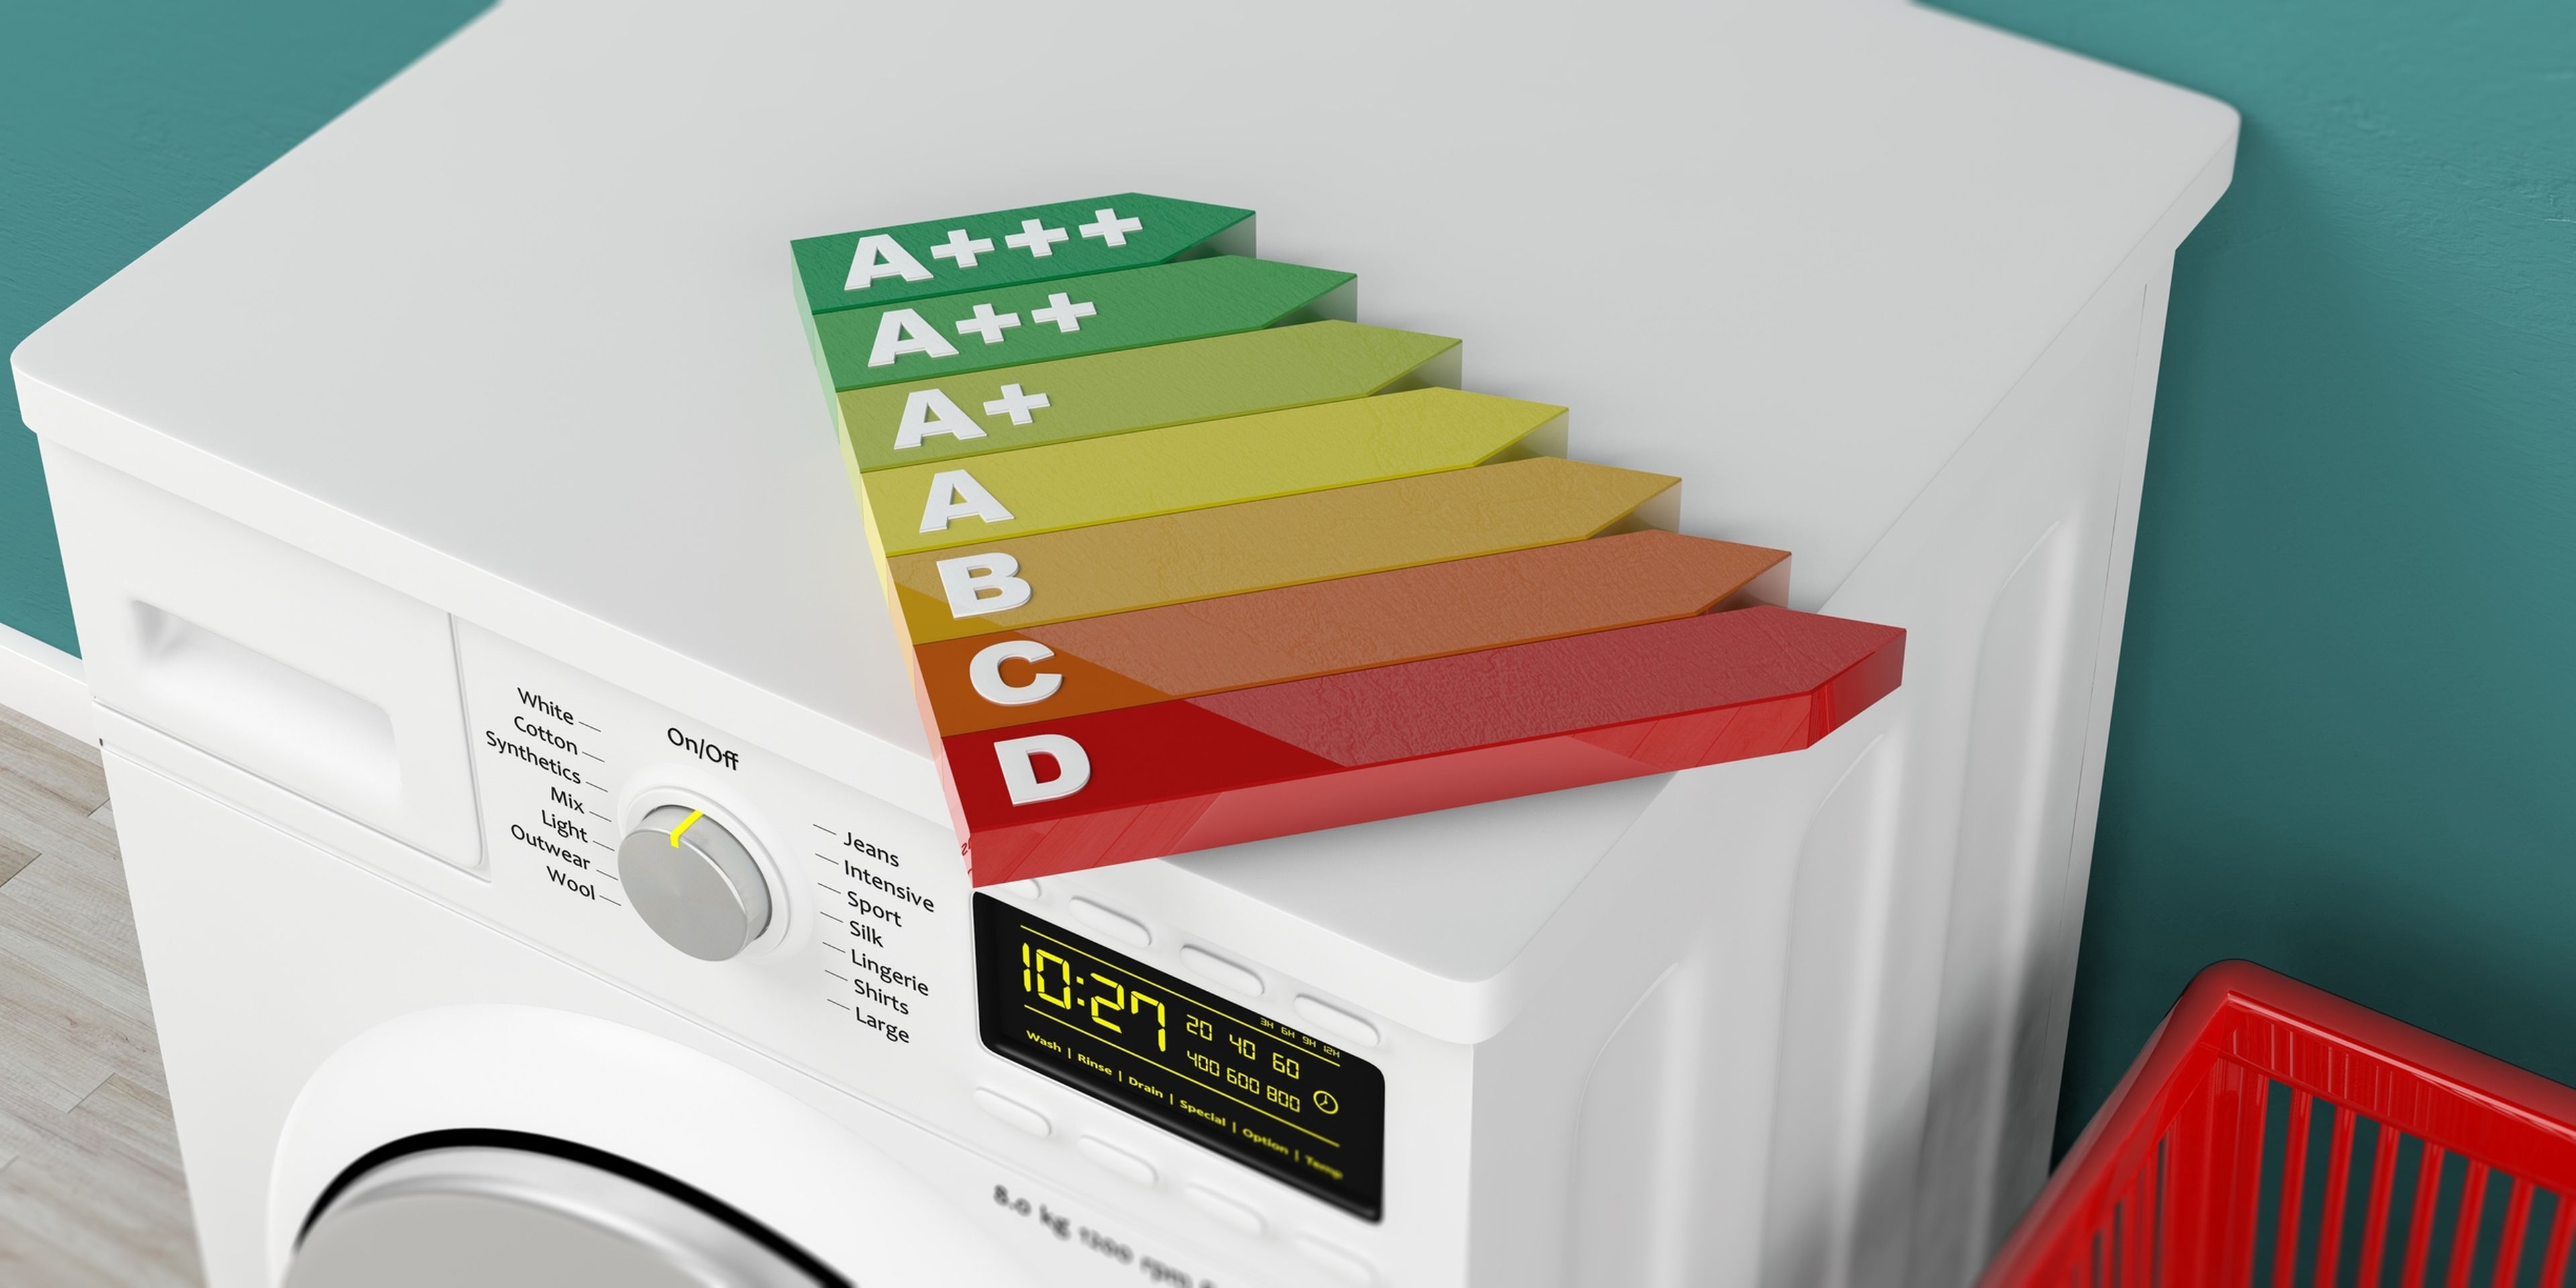 En qué debes fijarte para elegir una lavadora por su eficiencia energética